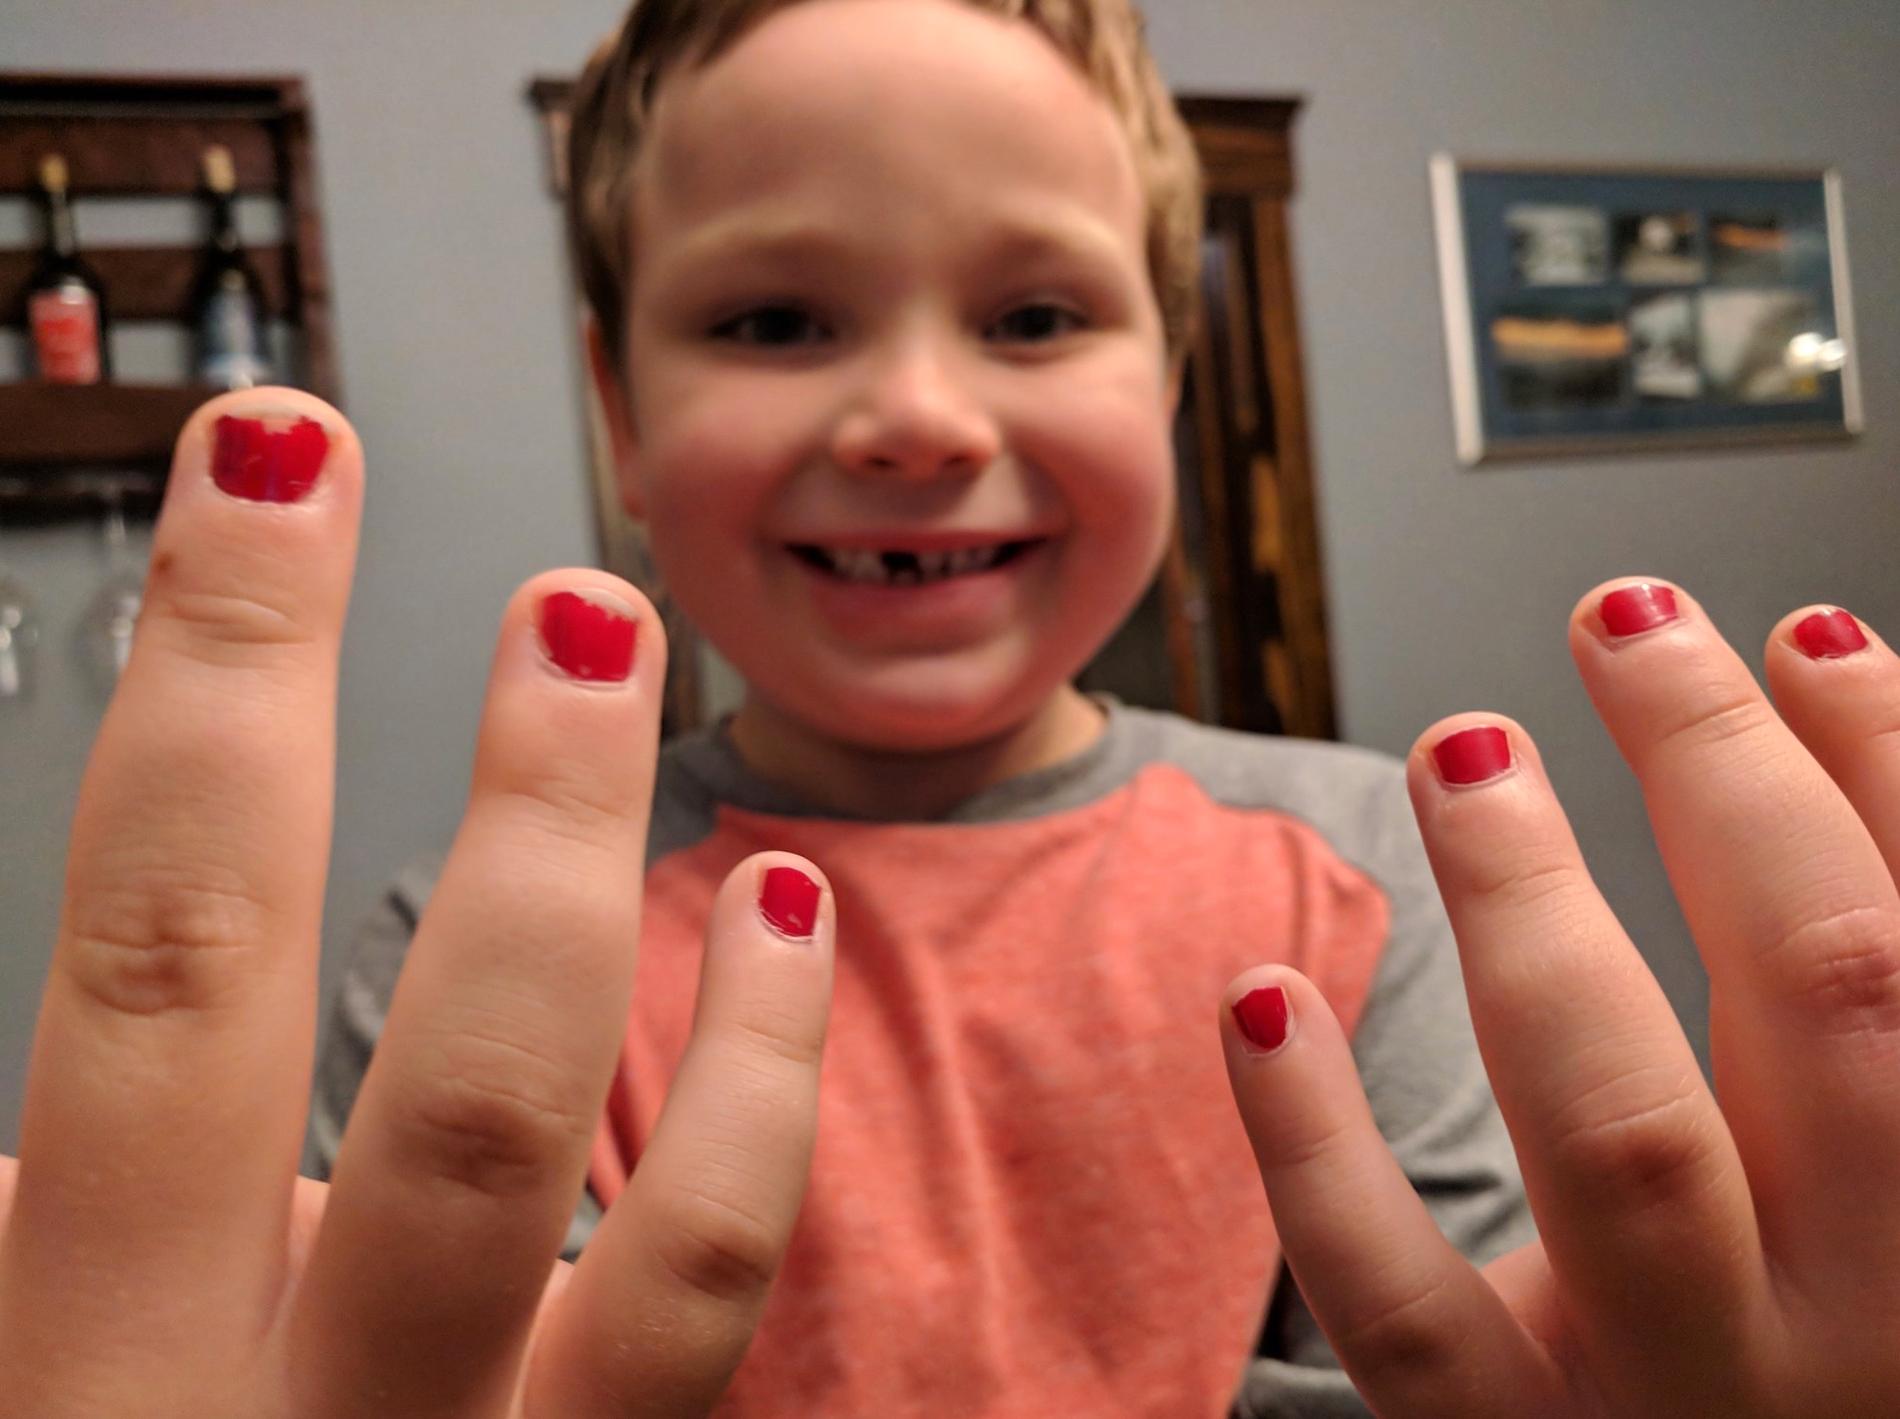 Sam gick till skolan med målade naglar – och var helt förstörd när han kom hem. 